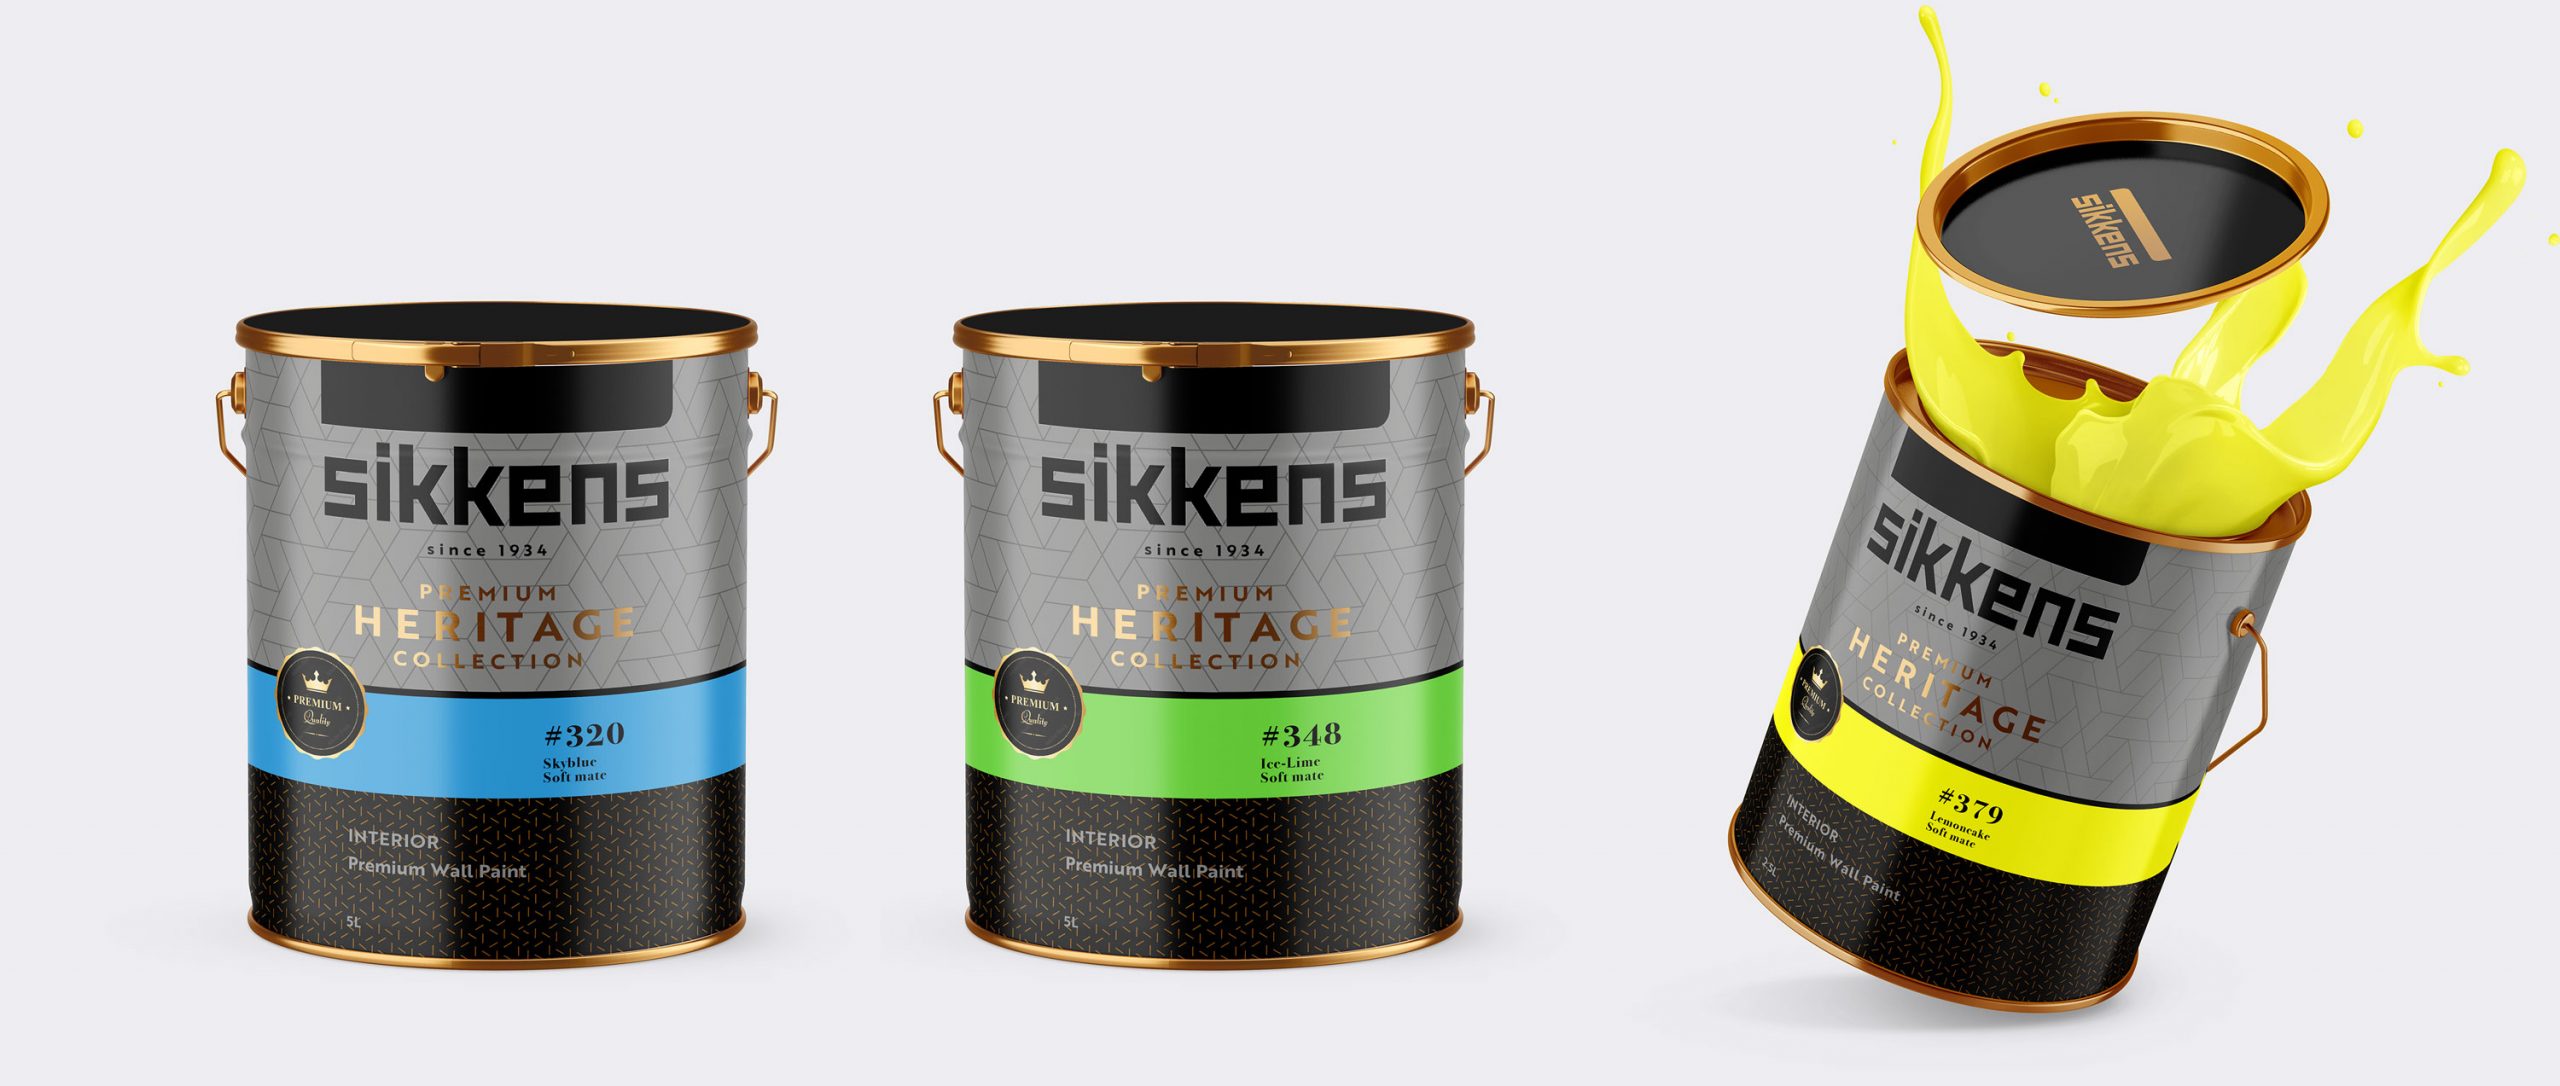 Bob Agency - sikkens - relaunch - packaging design